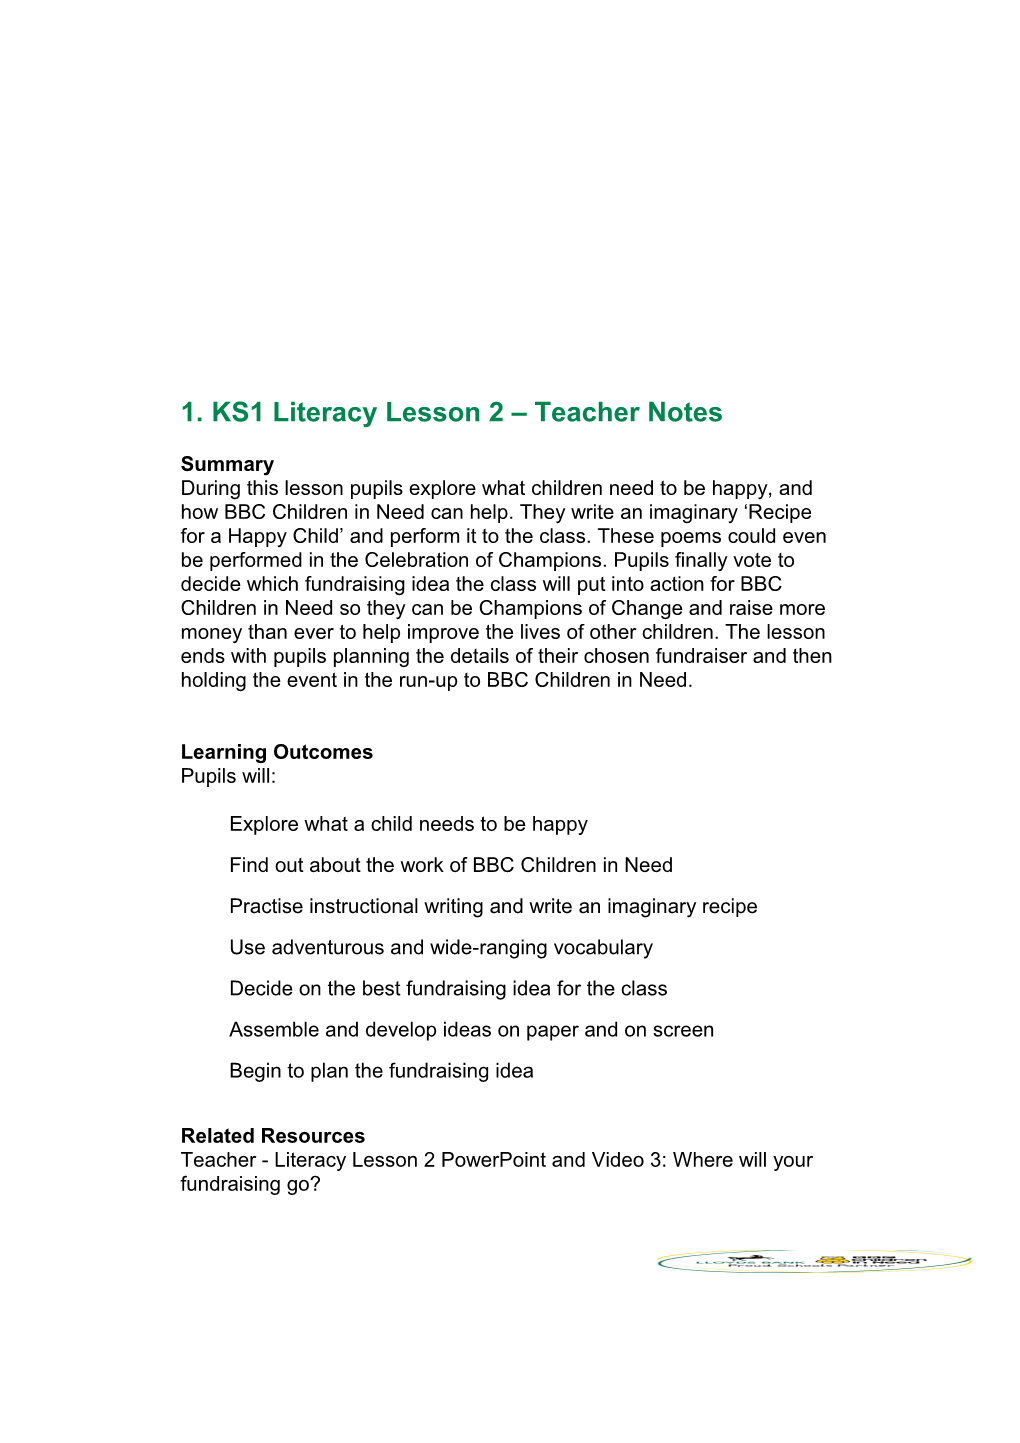 KS1 Literacy Lesson 2 Teacher Notes